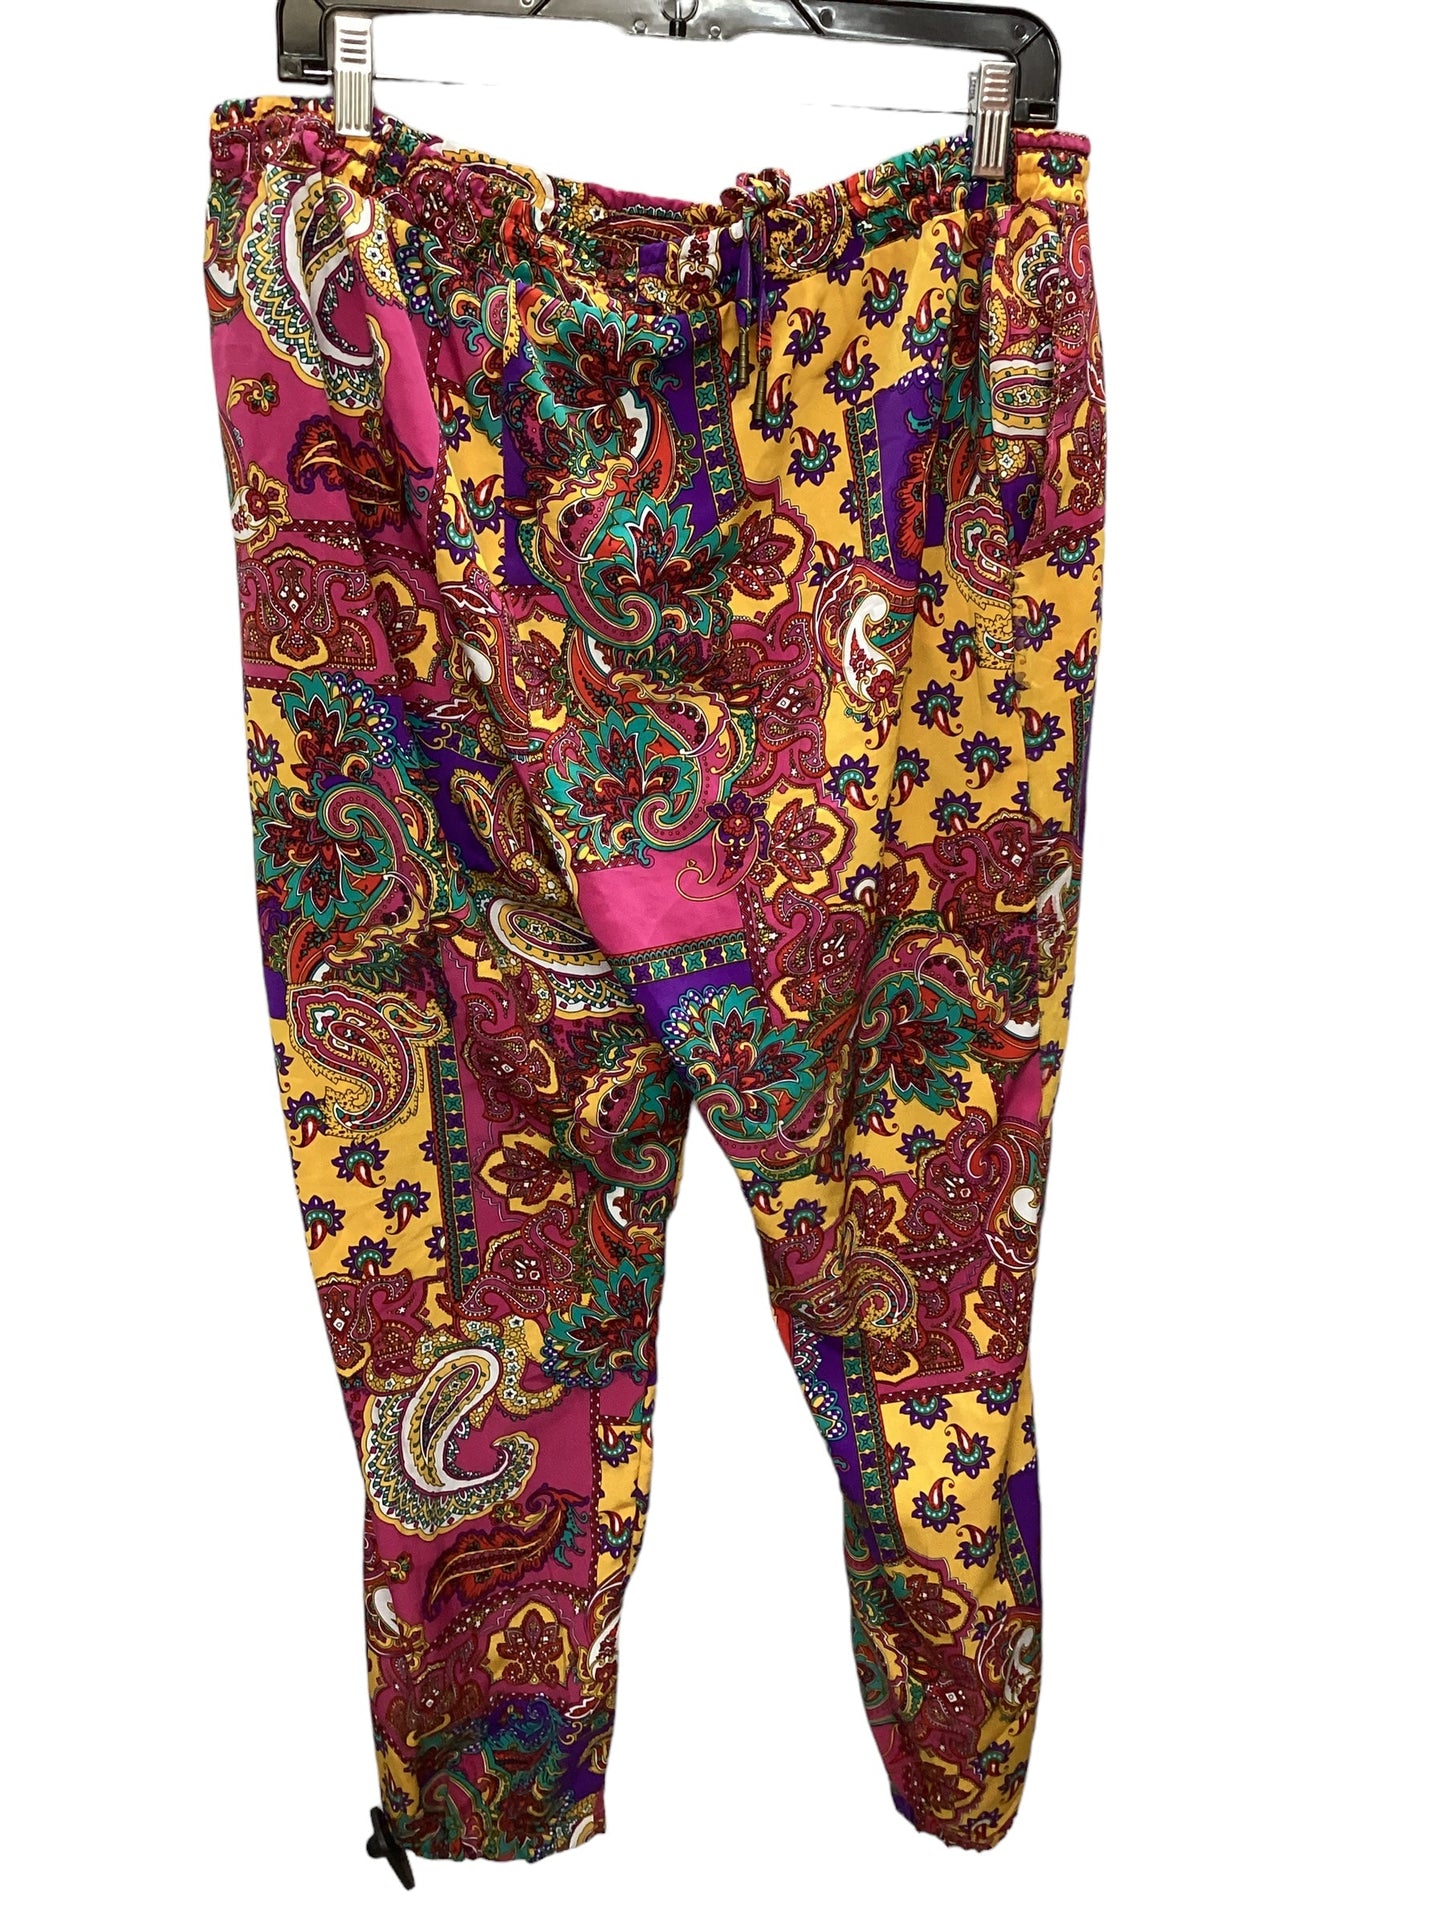 Pants Joggers By Lauren By Ralph Lauren  Size: 14